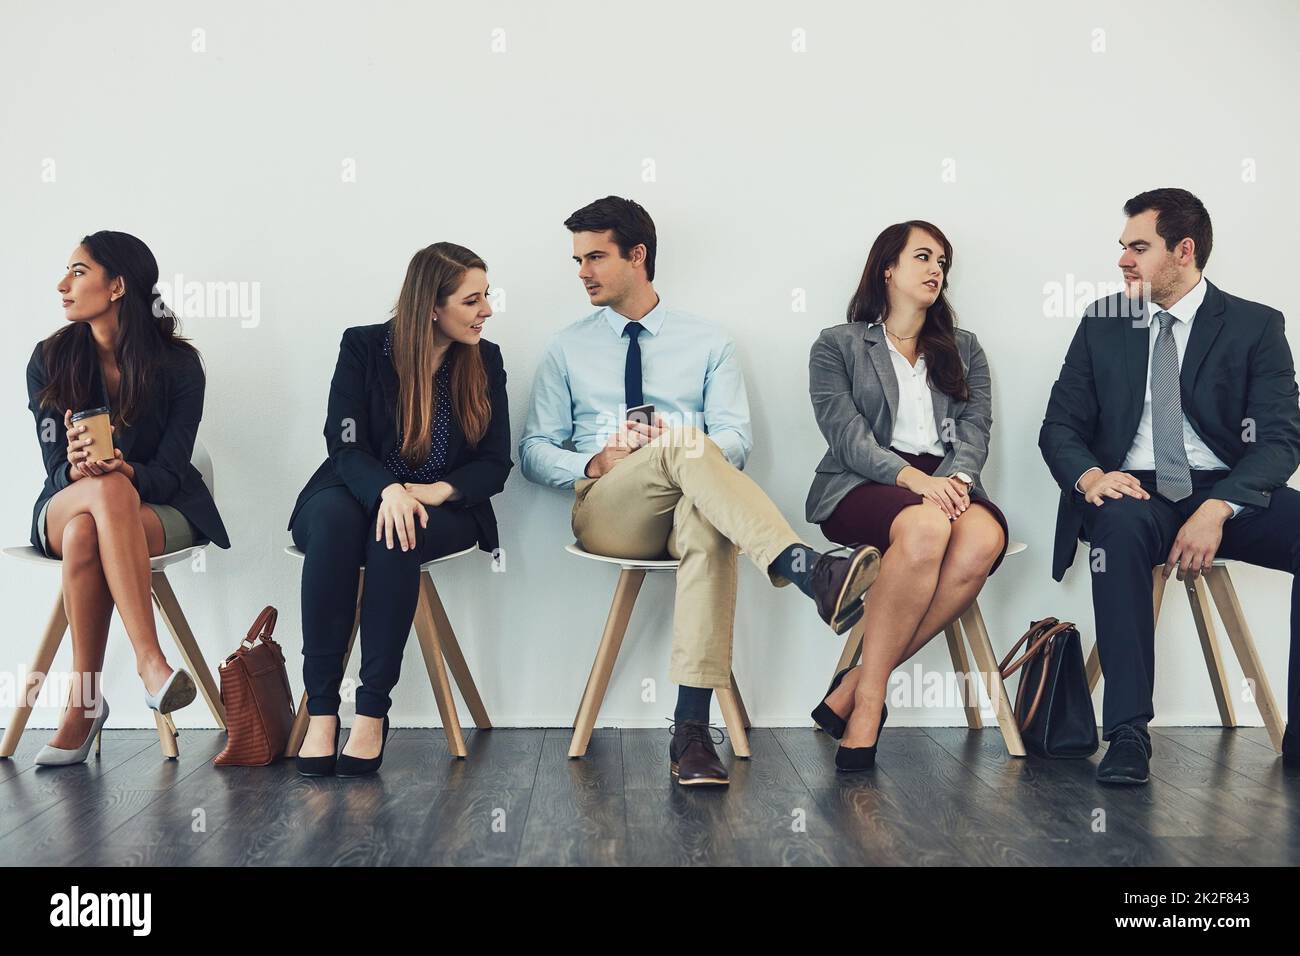 Se connecter à la concurrence. Photo studio d'un groupe de personnes en voyage d'affaires parlant en attendant dans la file d'attente. Banque D'Images